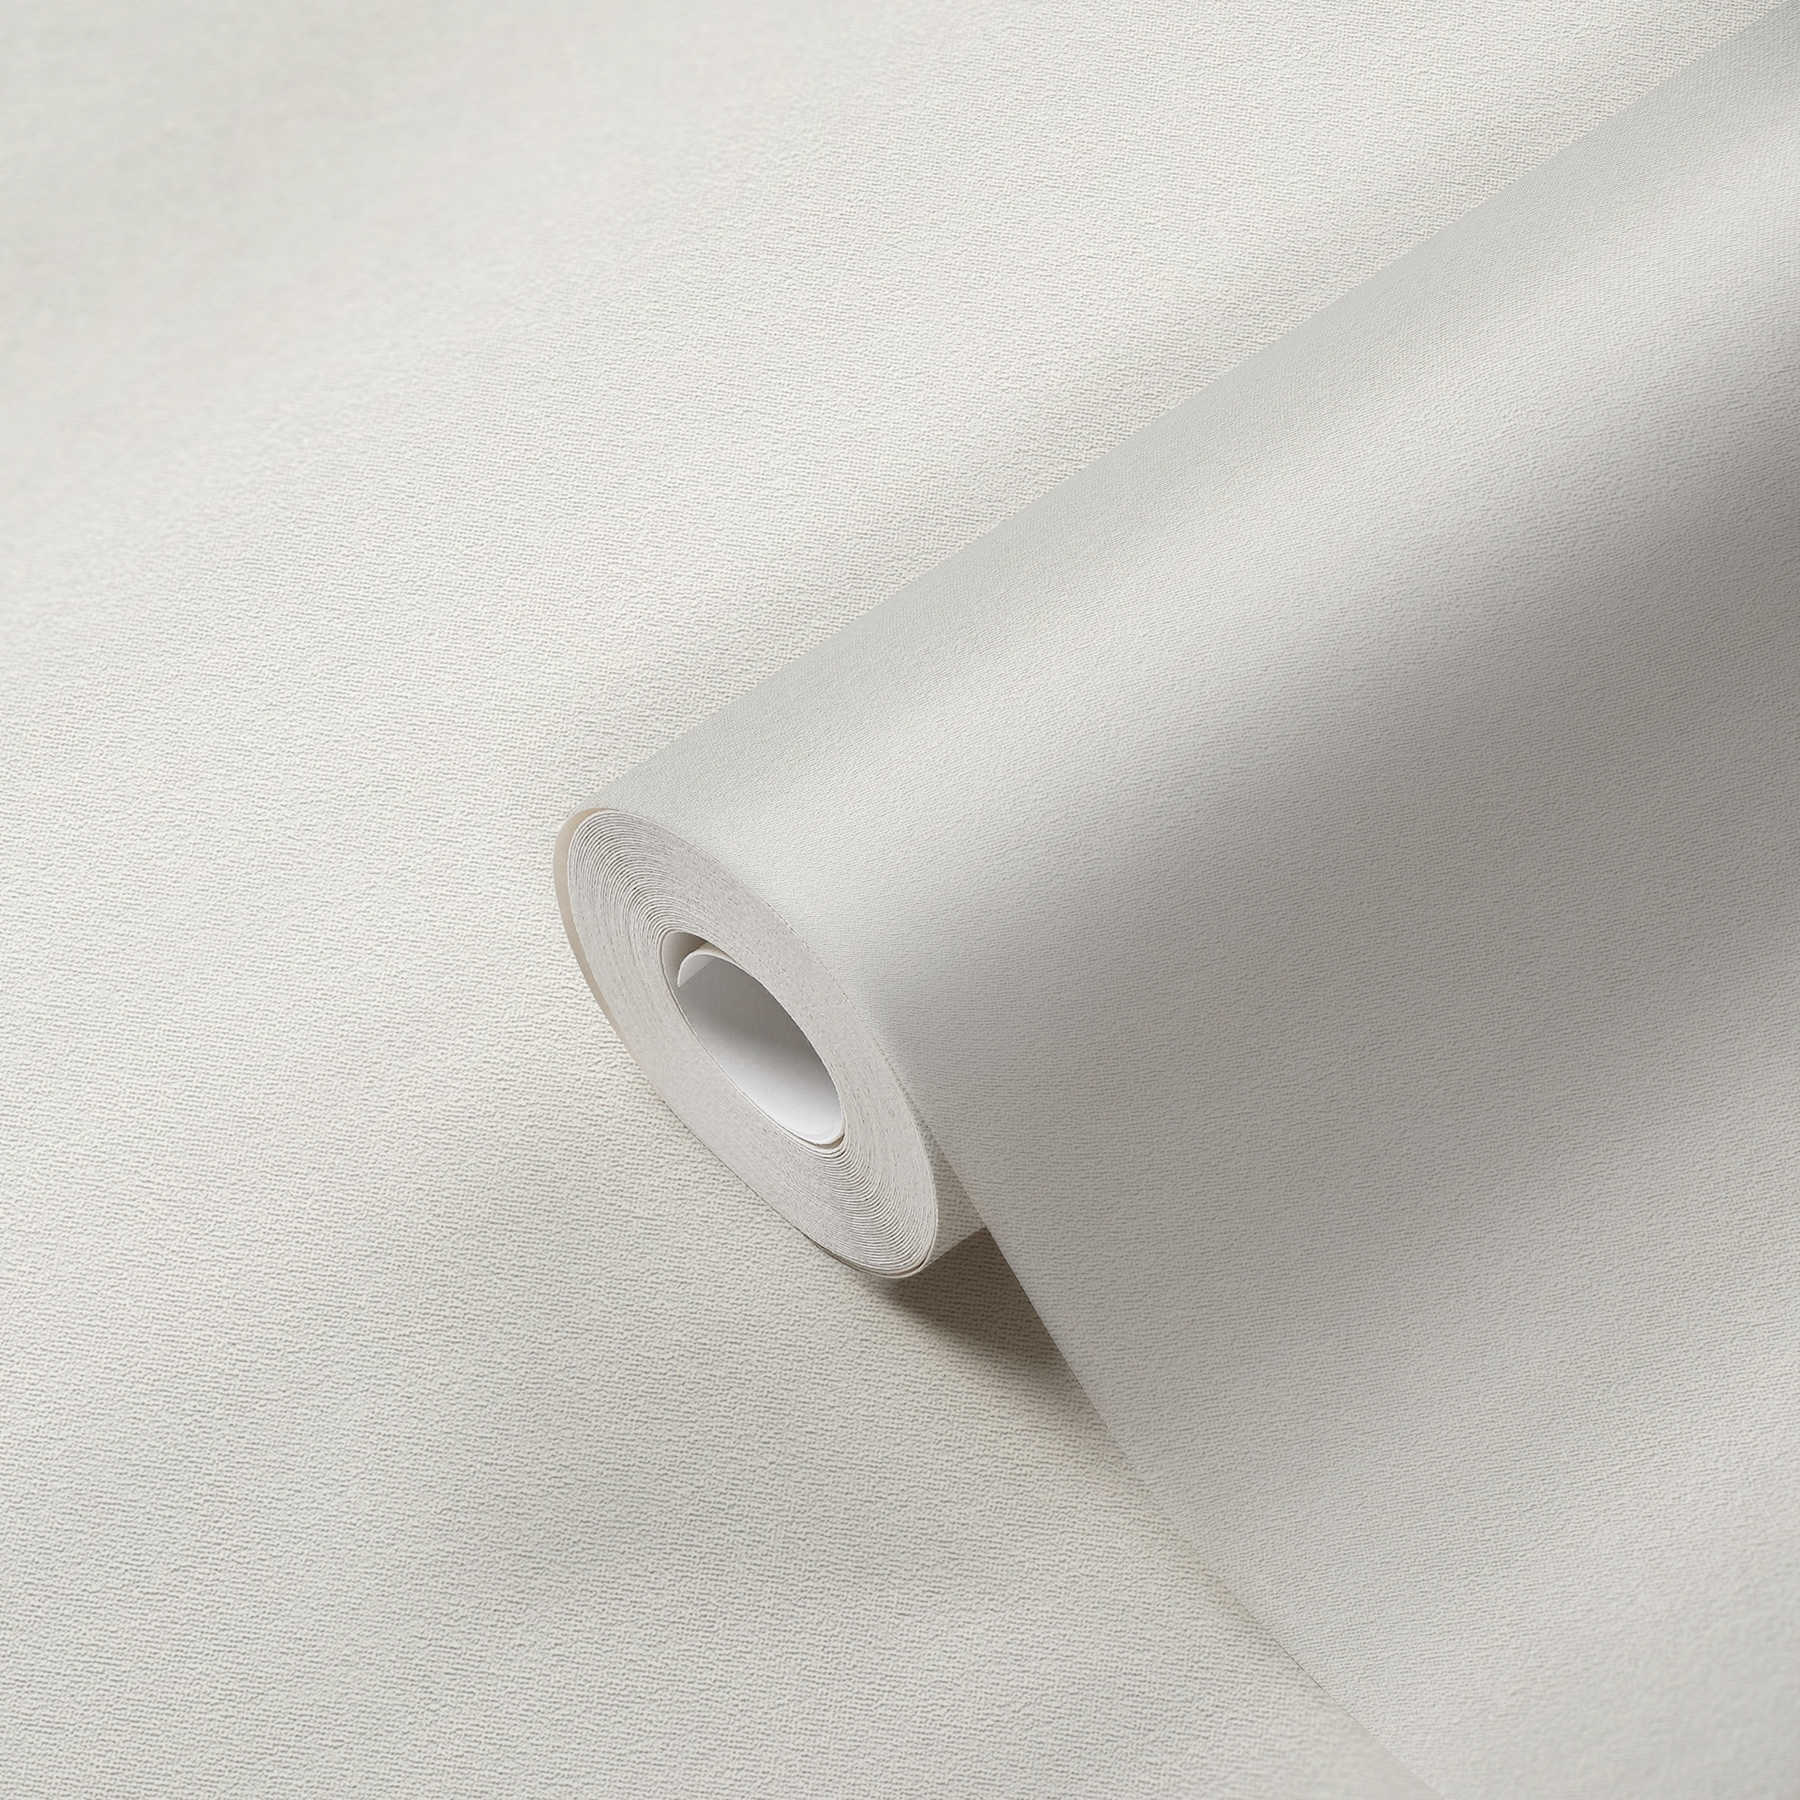             Non-woven wallpaper white monochrome matt with foam structure
        